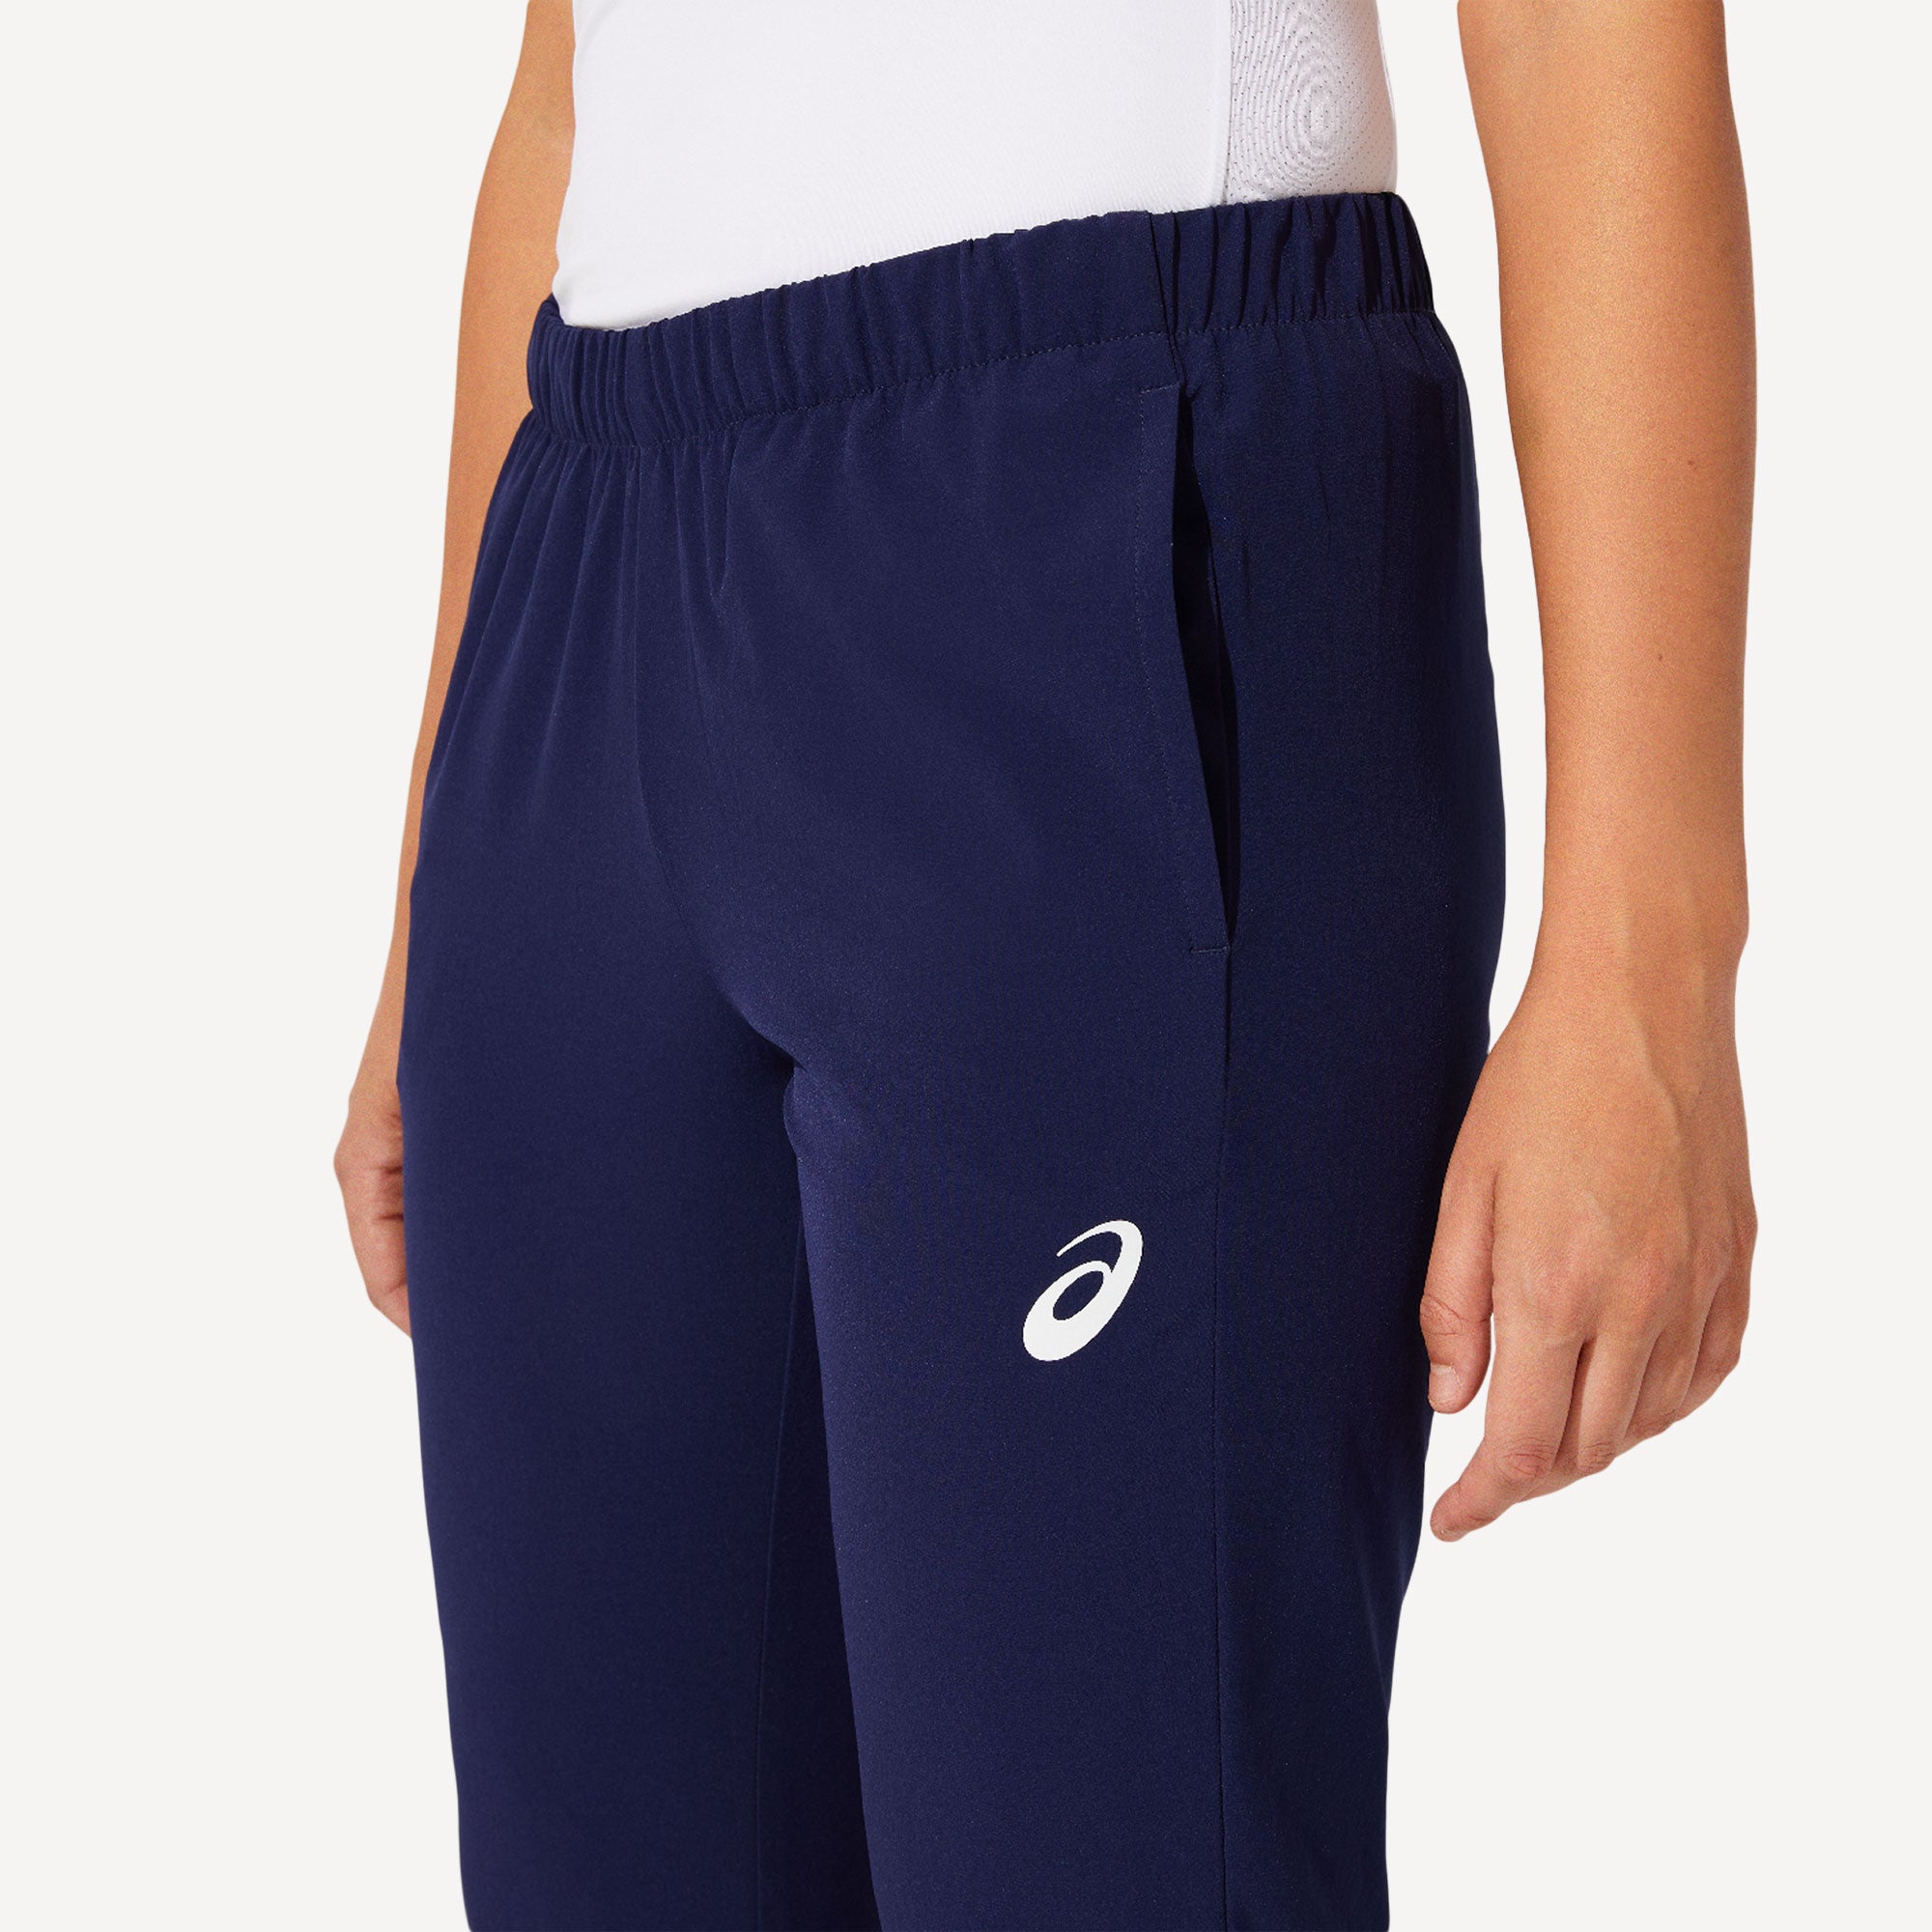 ASICS Match Women's Tennis Pants Blue (4)